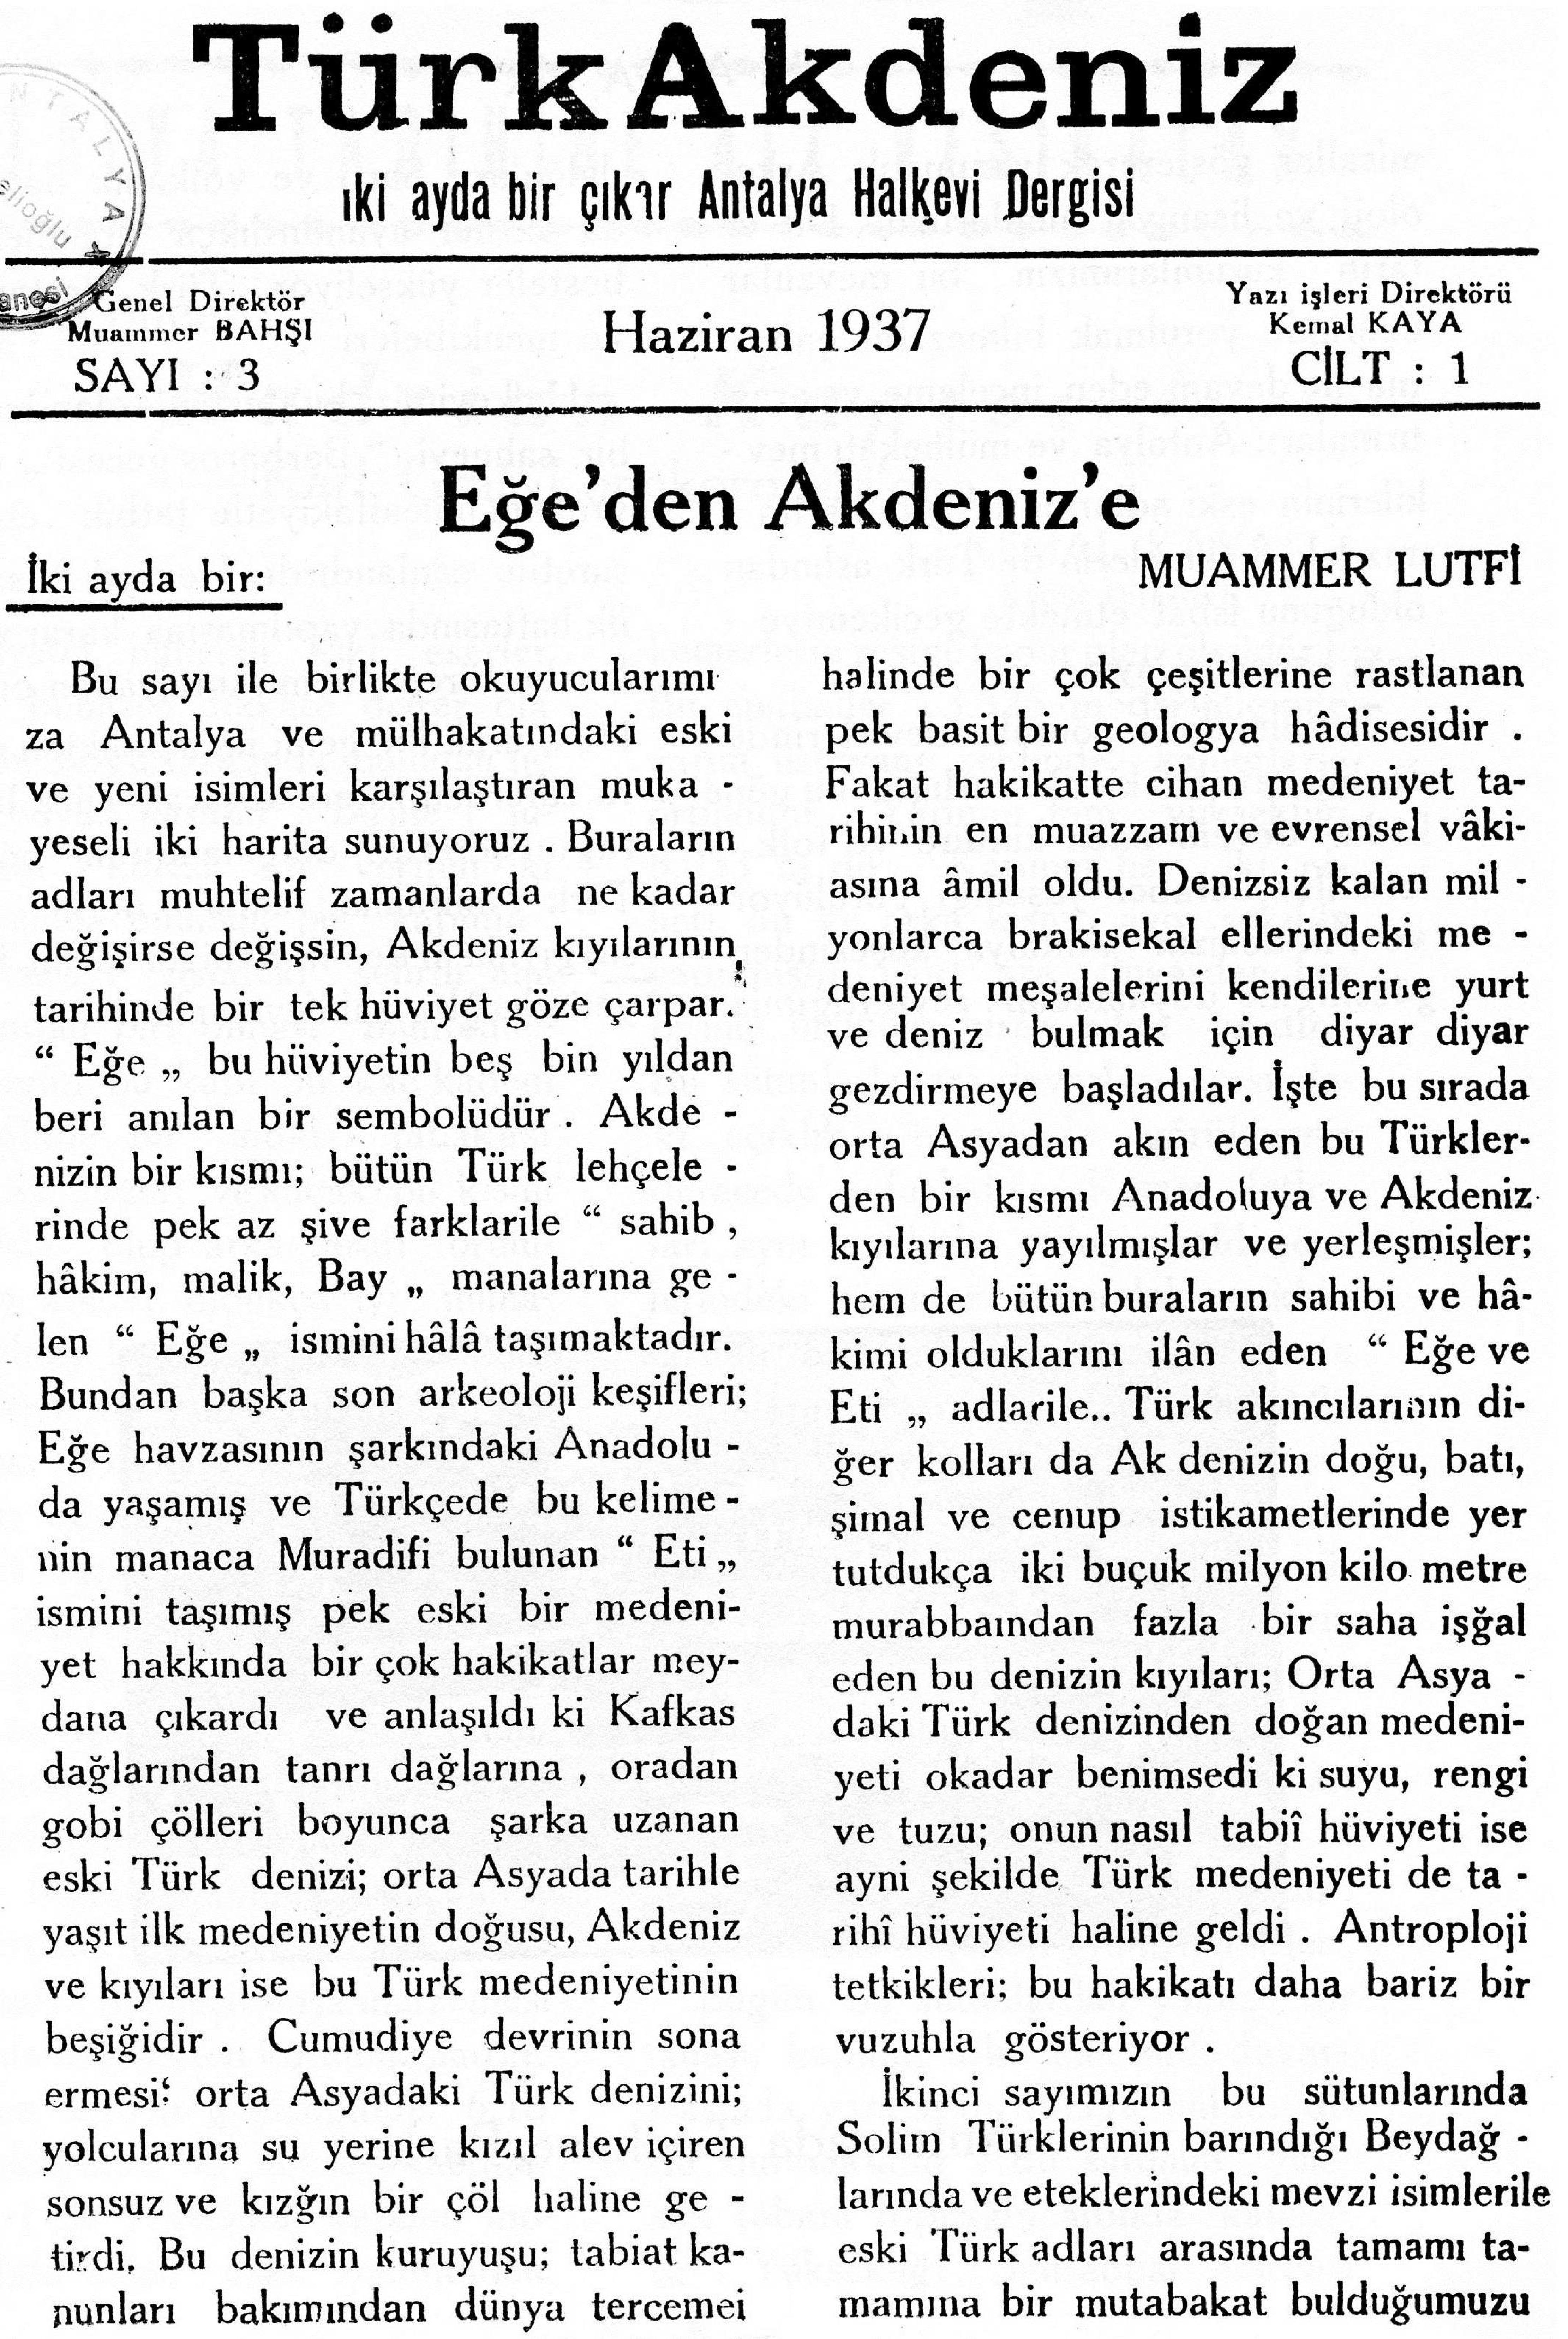 he-turk-akdeniz_1937-1(03)